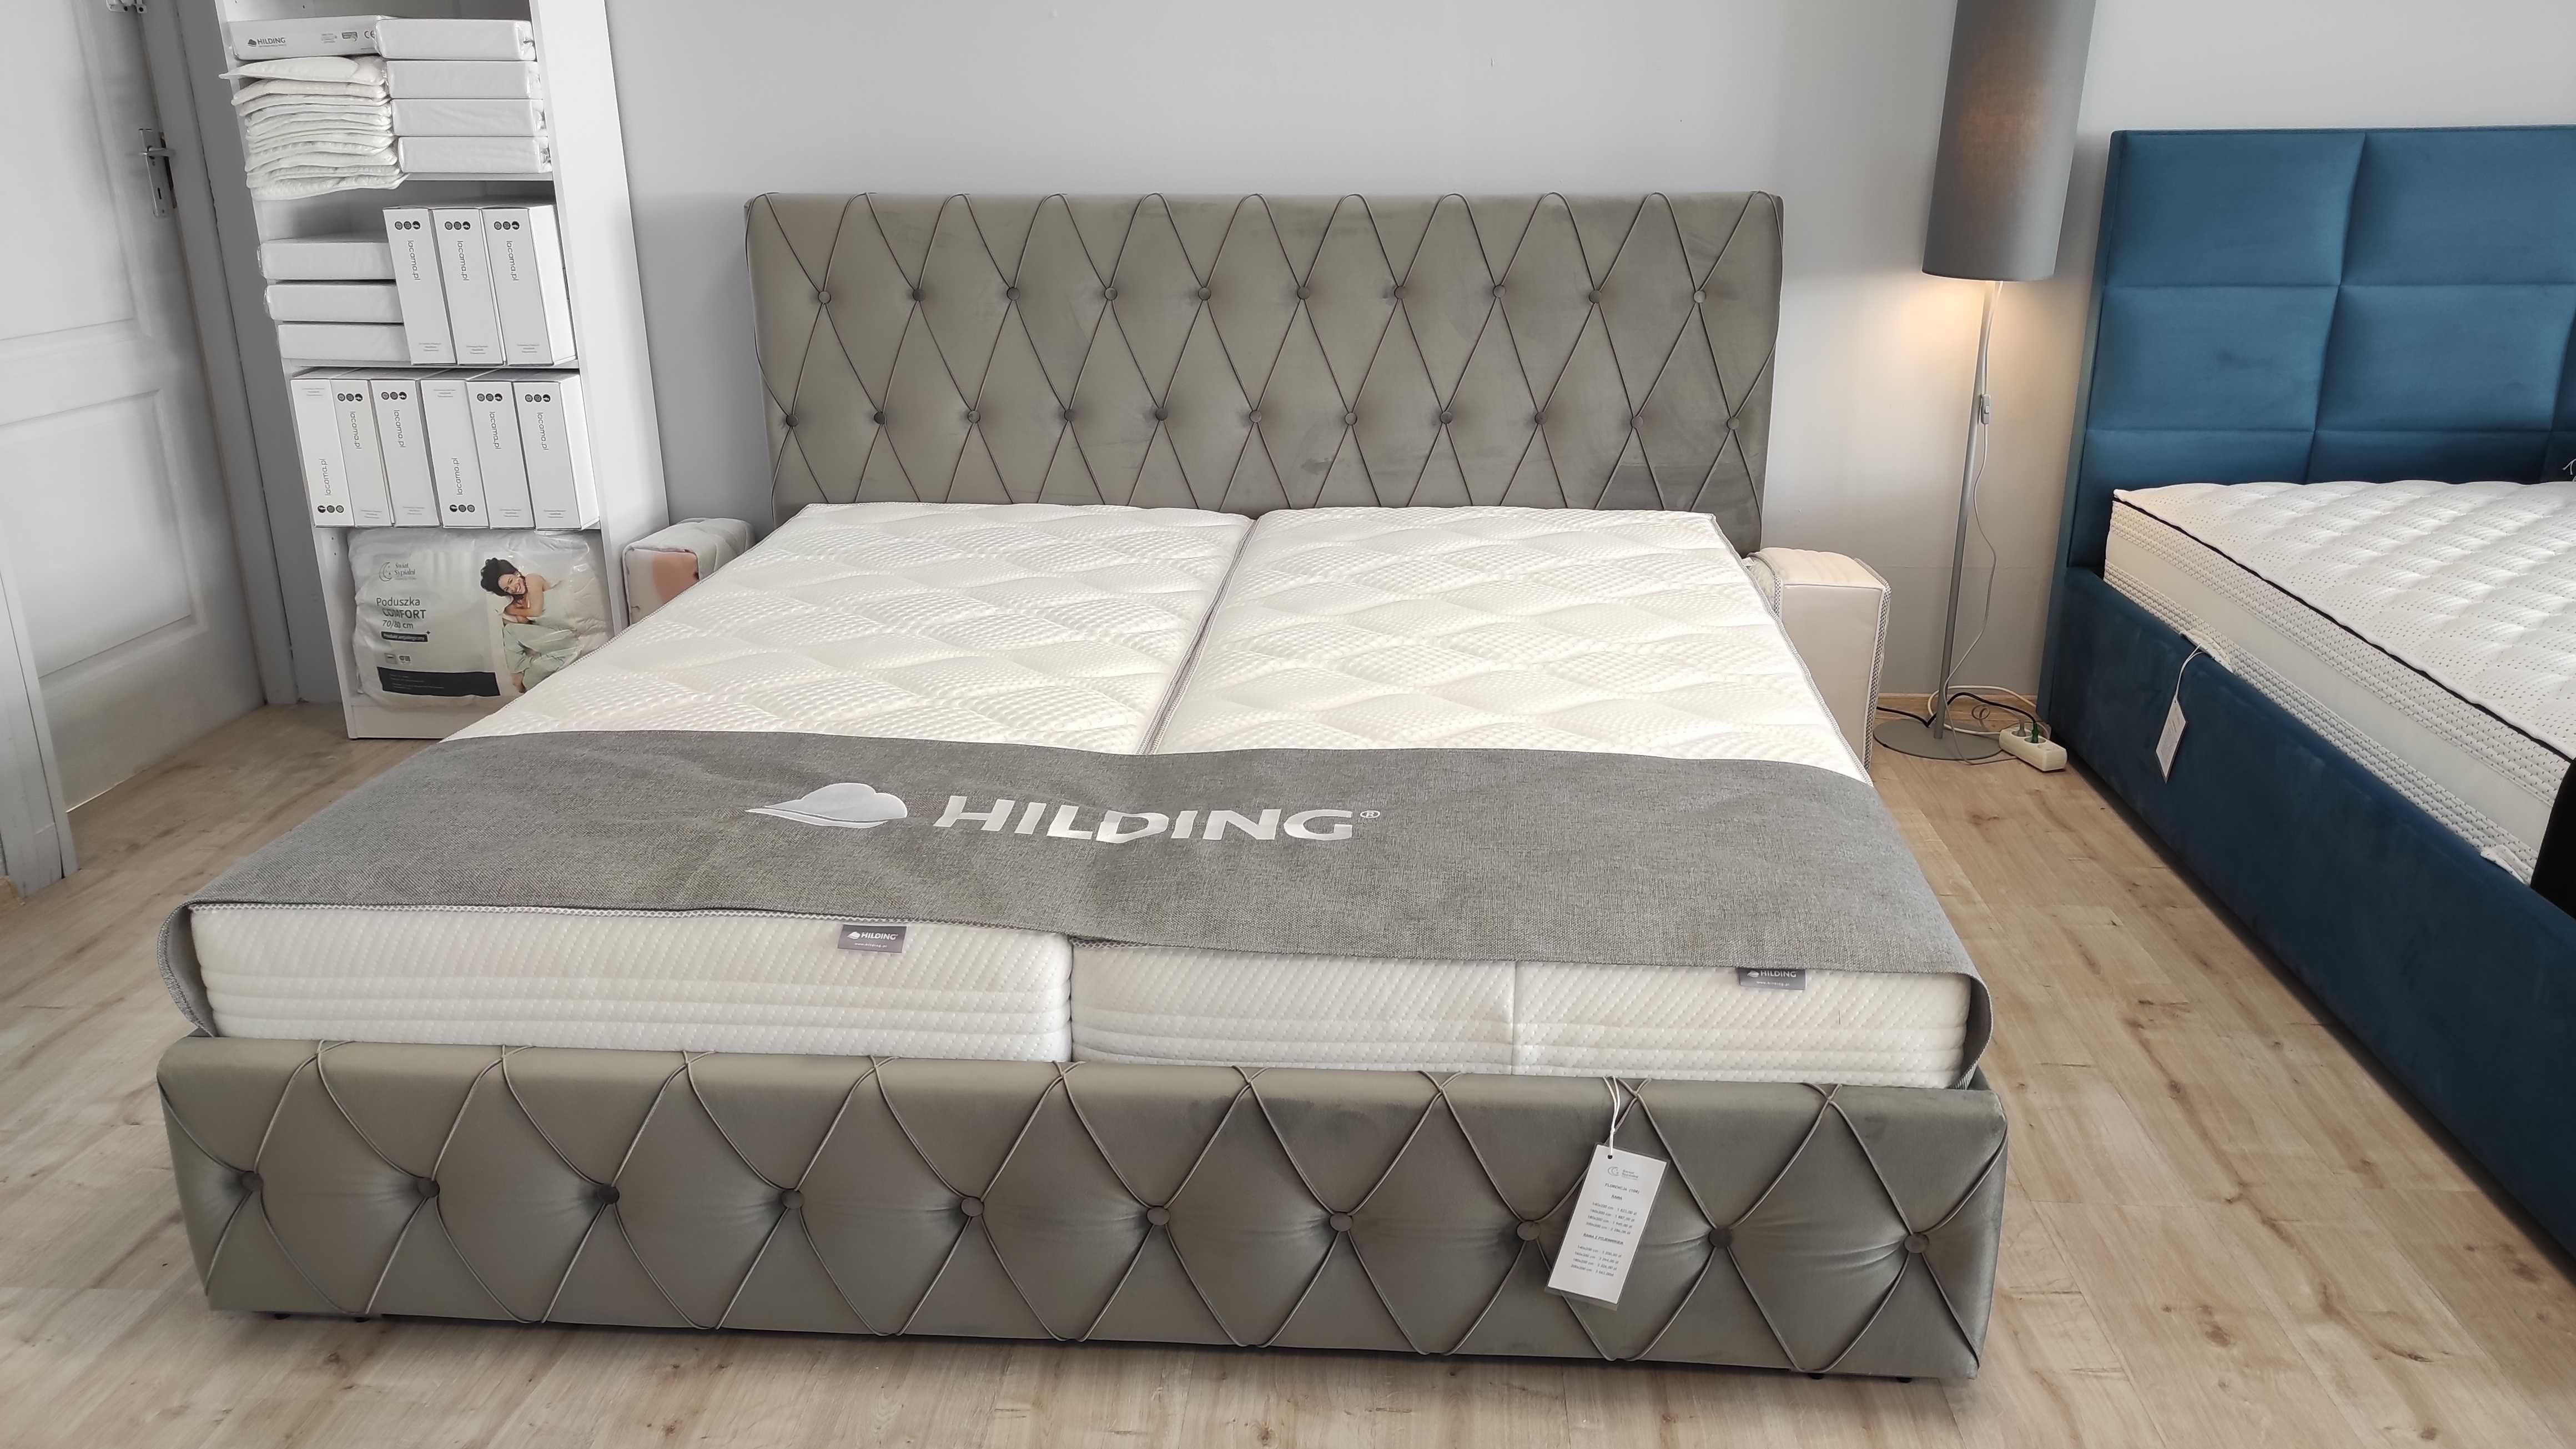 Łóżka tapicerowane, łóżka z litego drewna, materace.